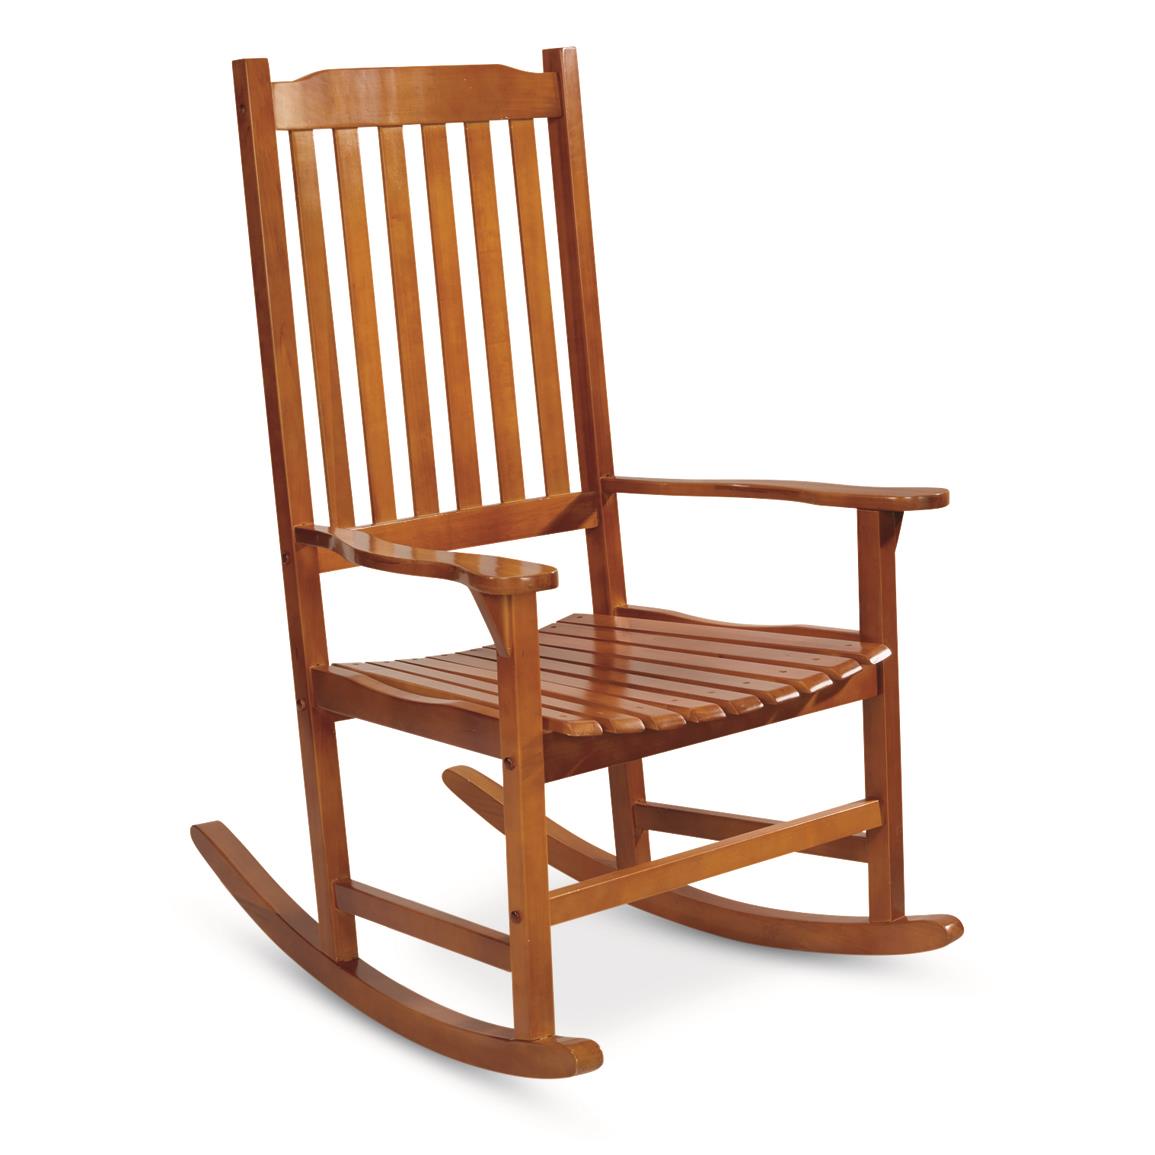 CASTLECREEK Oversized Rocking Chair, 400-lb. Capacity, Oak